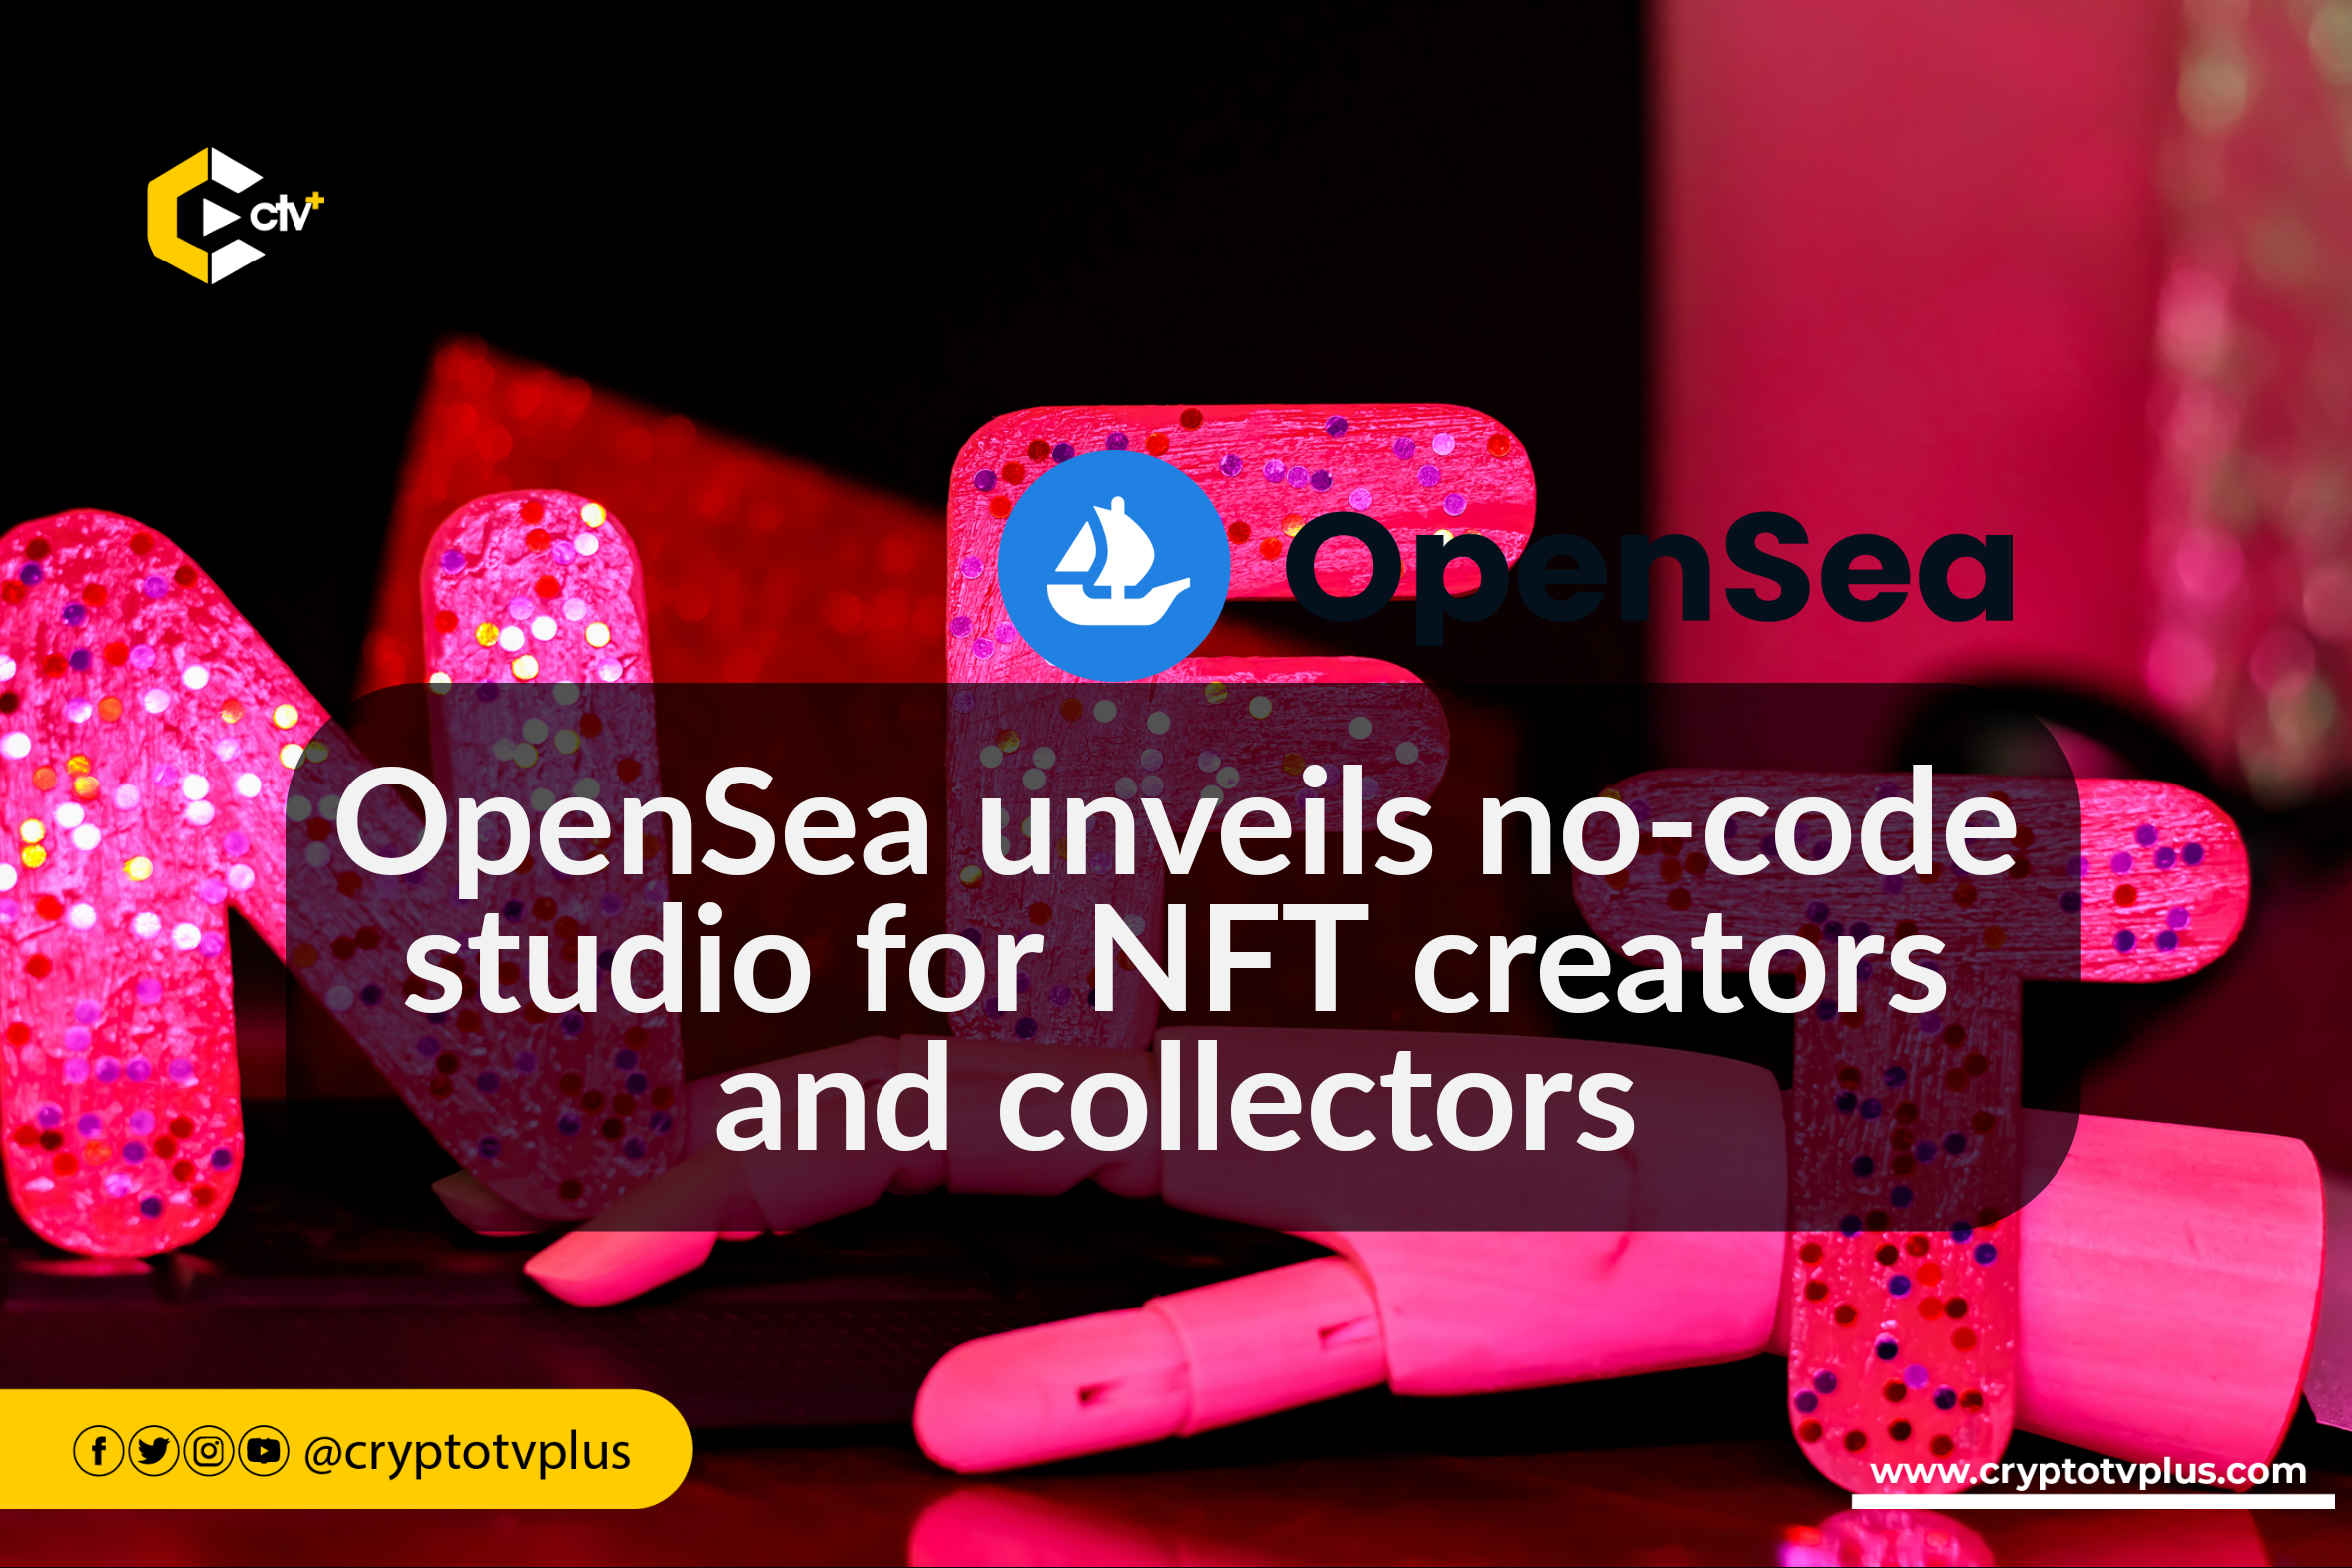 OpenSea Unveils OpenSea Studio to Help Creators Easily Launch NFT Projects